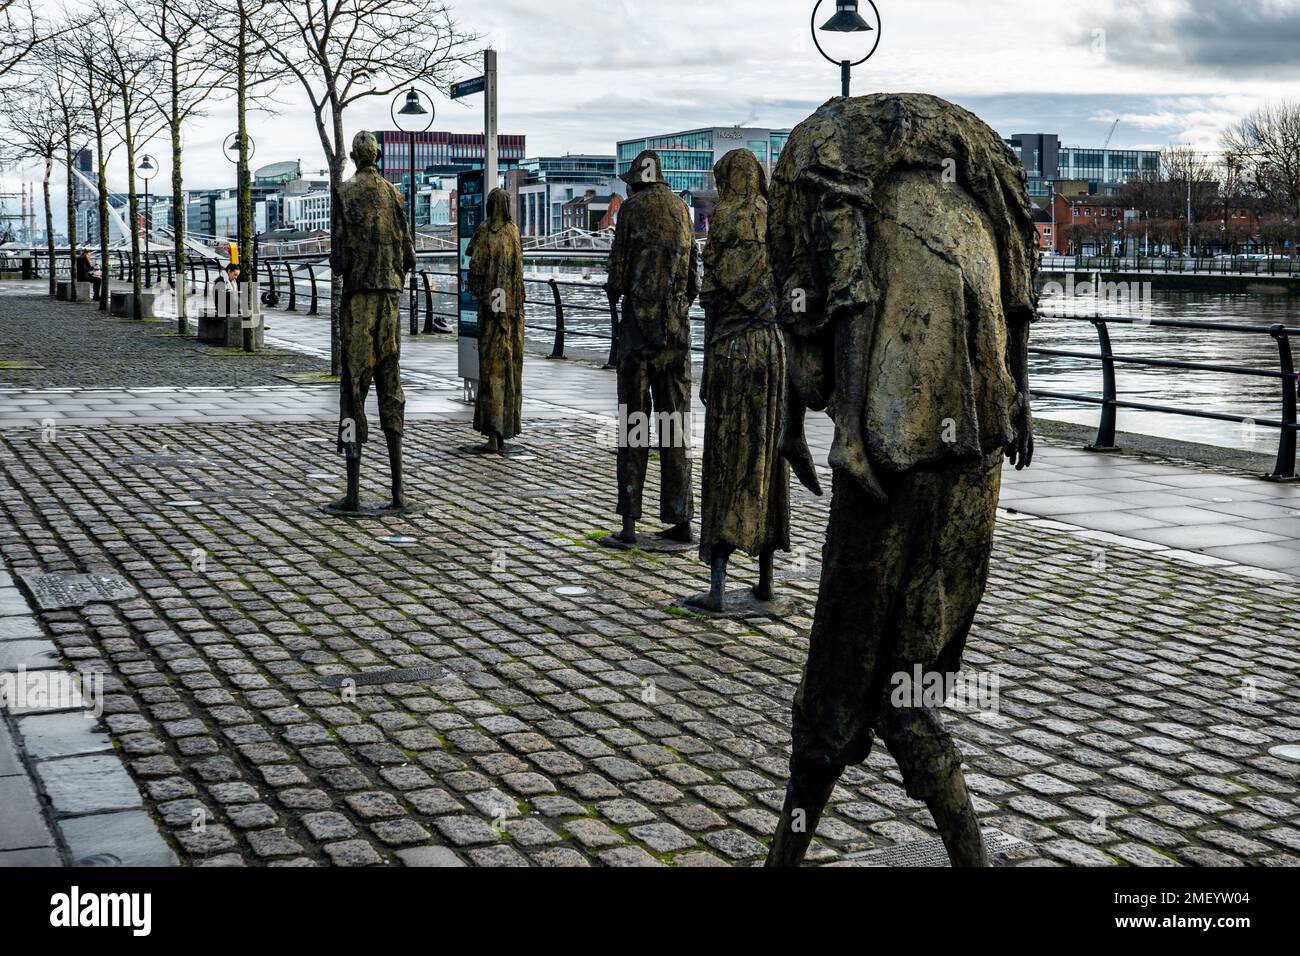 Le mémorial de la famine, sur Custom House Quay, Dublin, Irlande. La sculpture montre des personnes émaciées quittant, pendant la Grande famine la population de moitié Banque D'Images